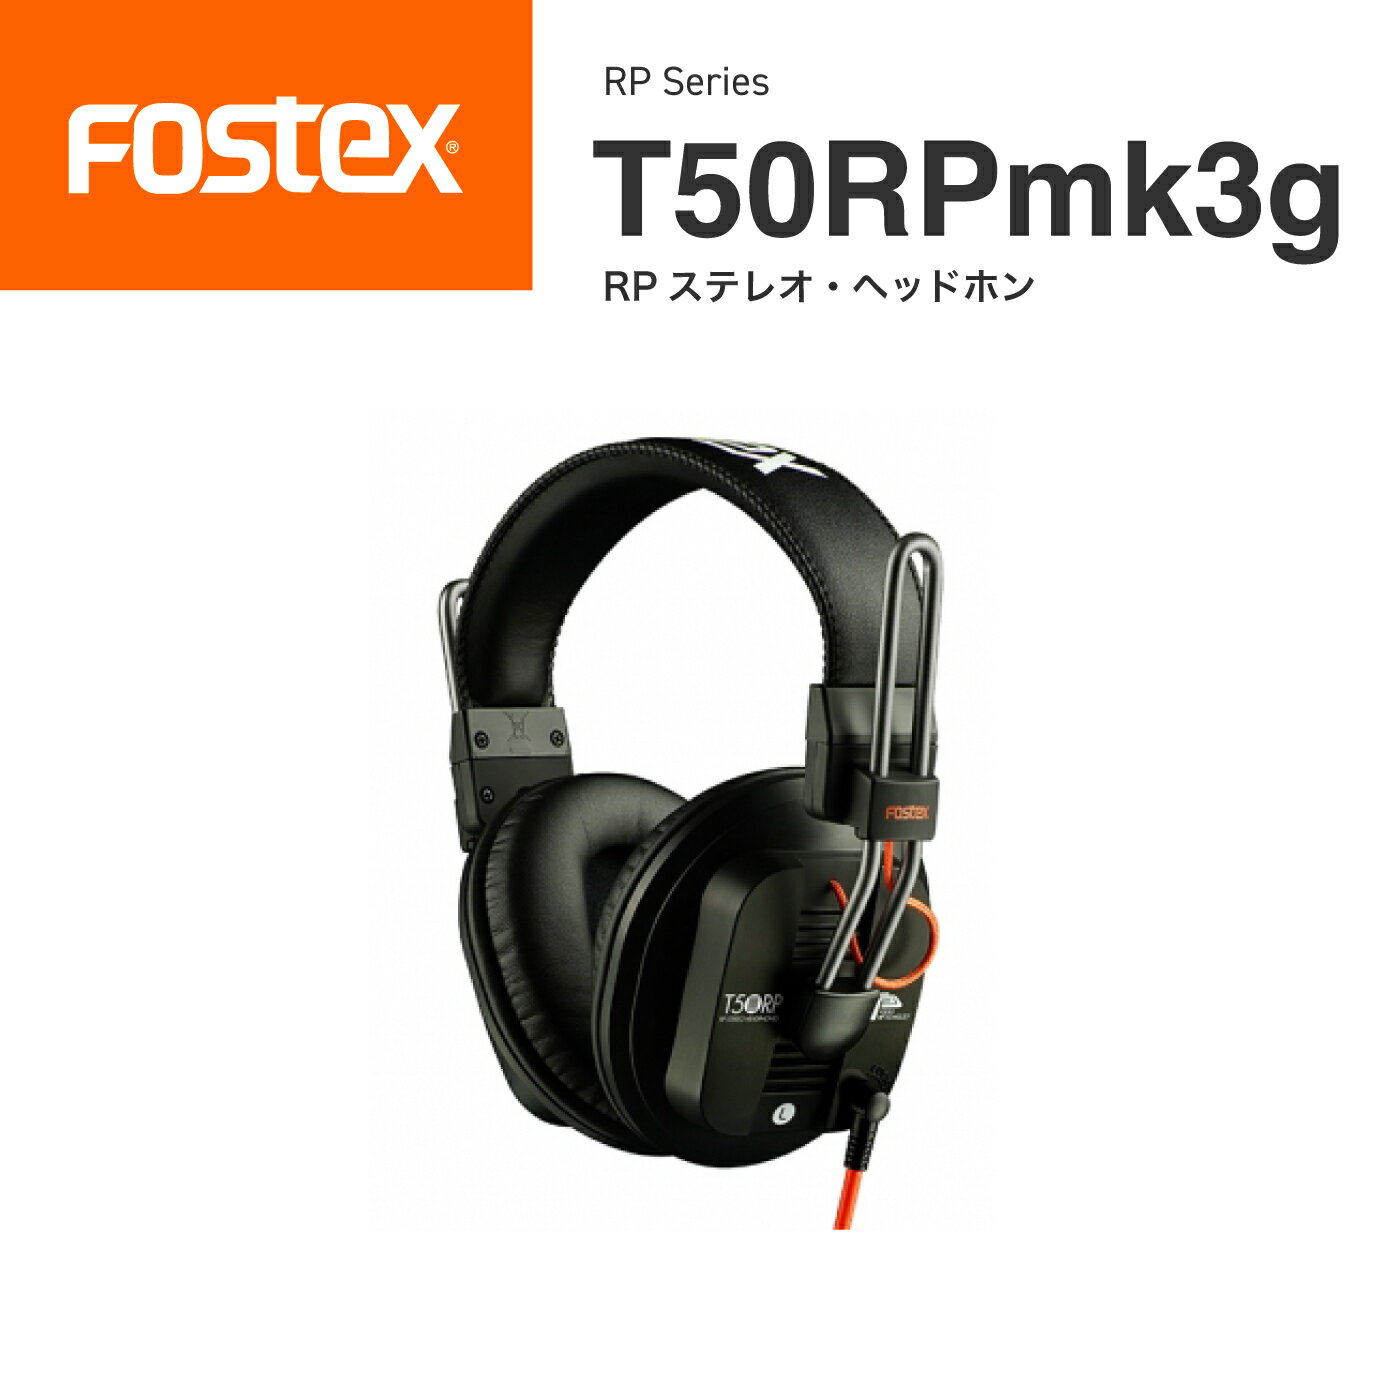 FOSTEX T50RPmk3g リファレンス・ヘッドホン フォステクス 全面駆動型 平面振動版 正規代理店